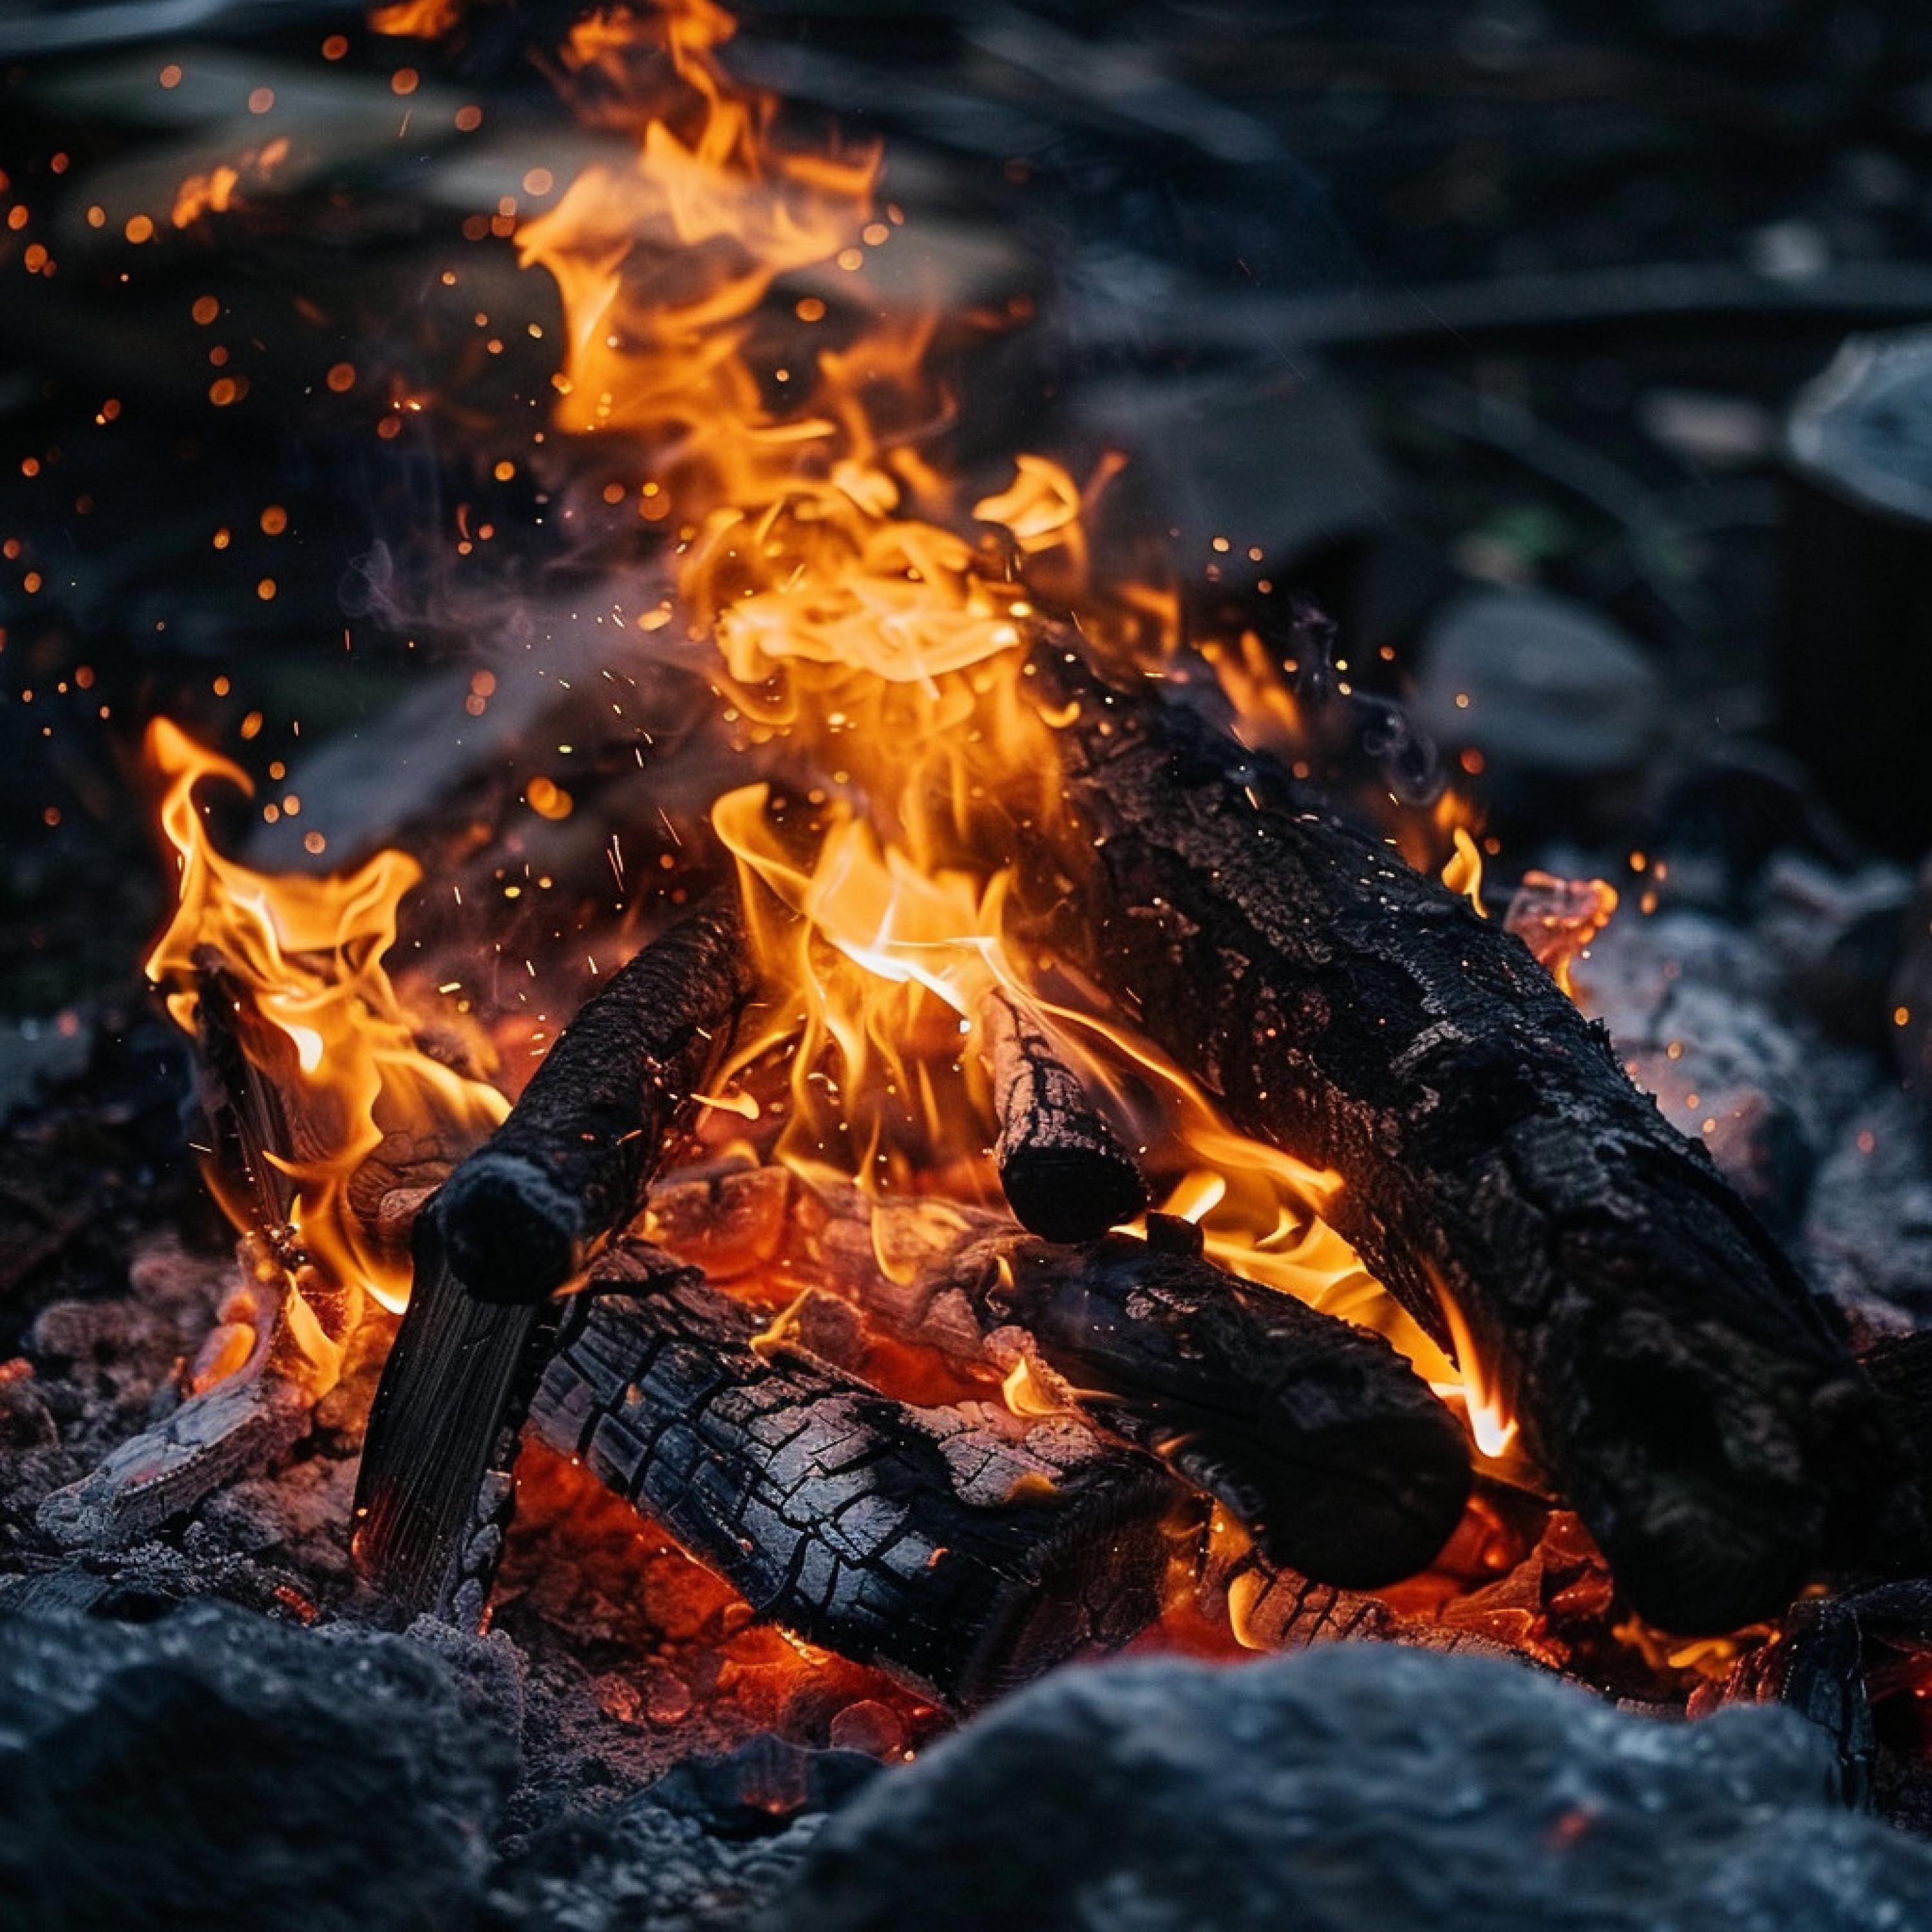 Relaxation Noisy Tones - Serene Campfire Night Melody